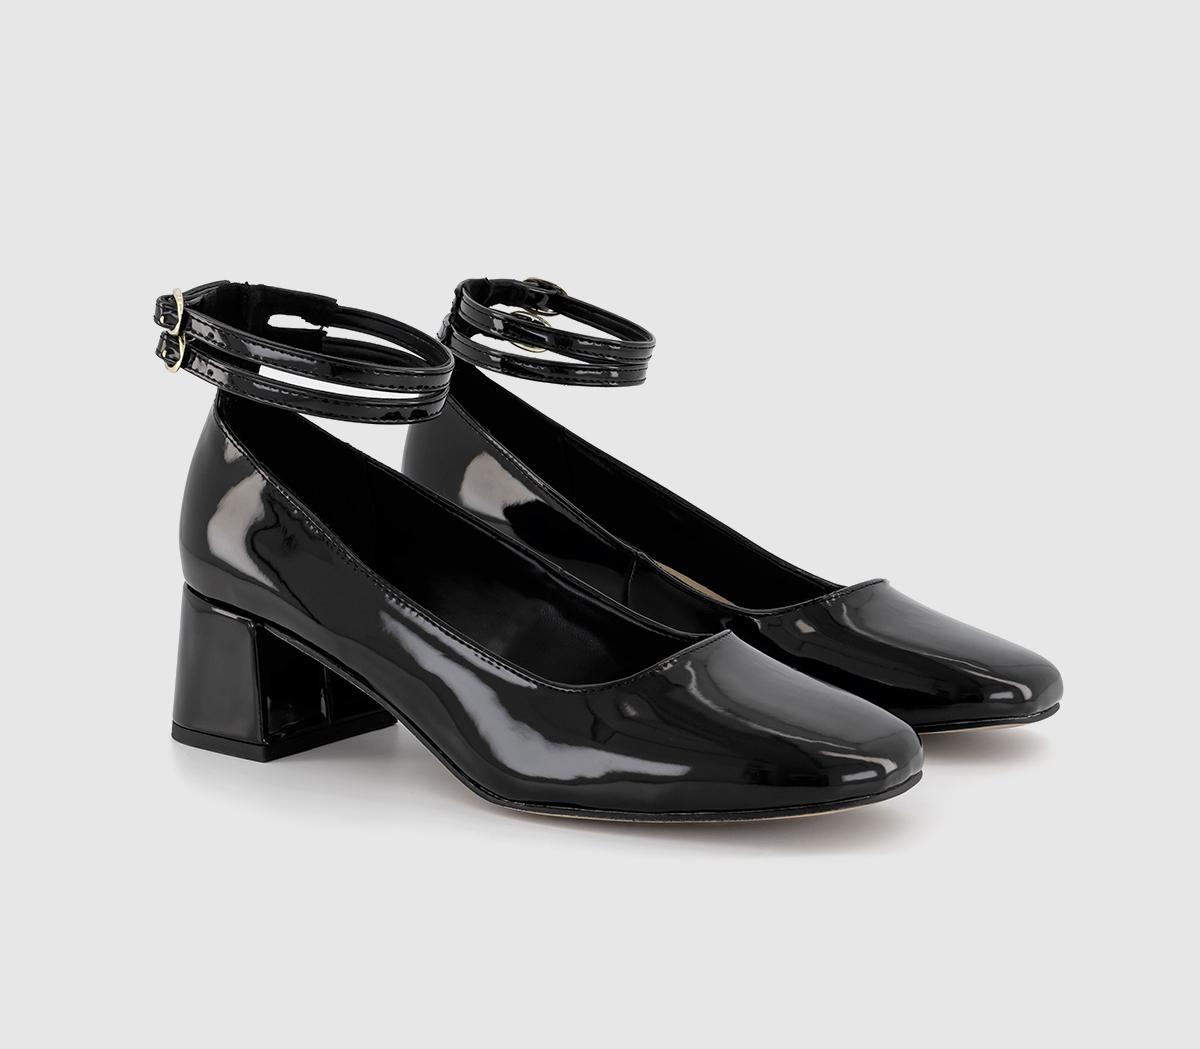 OFFICE Womens Milton Cross Strap Court Shoes Black, 3